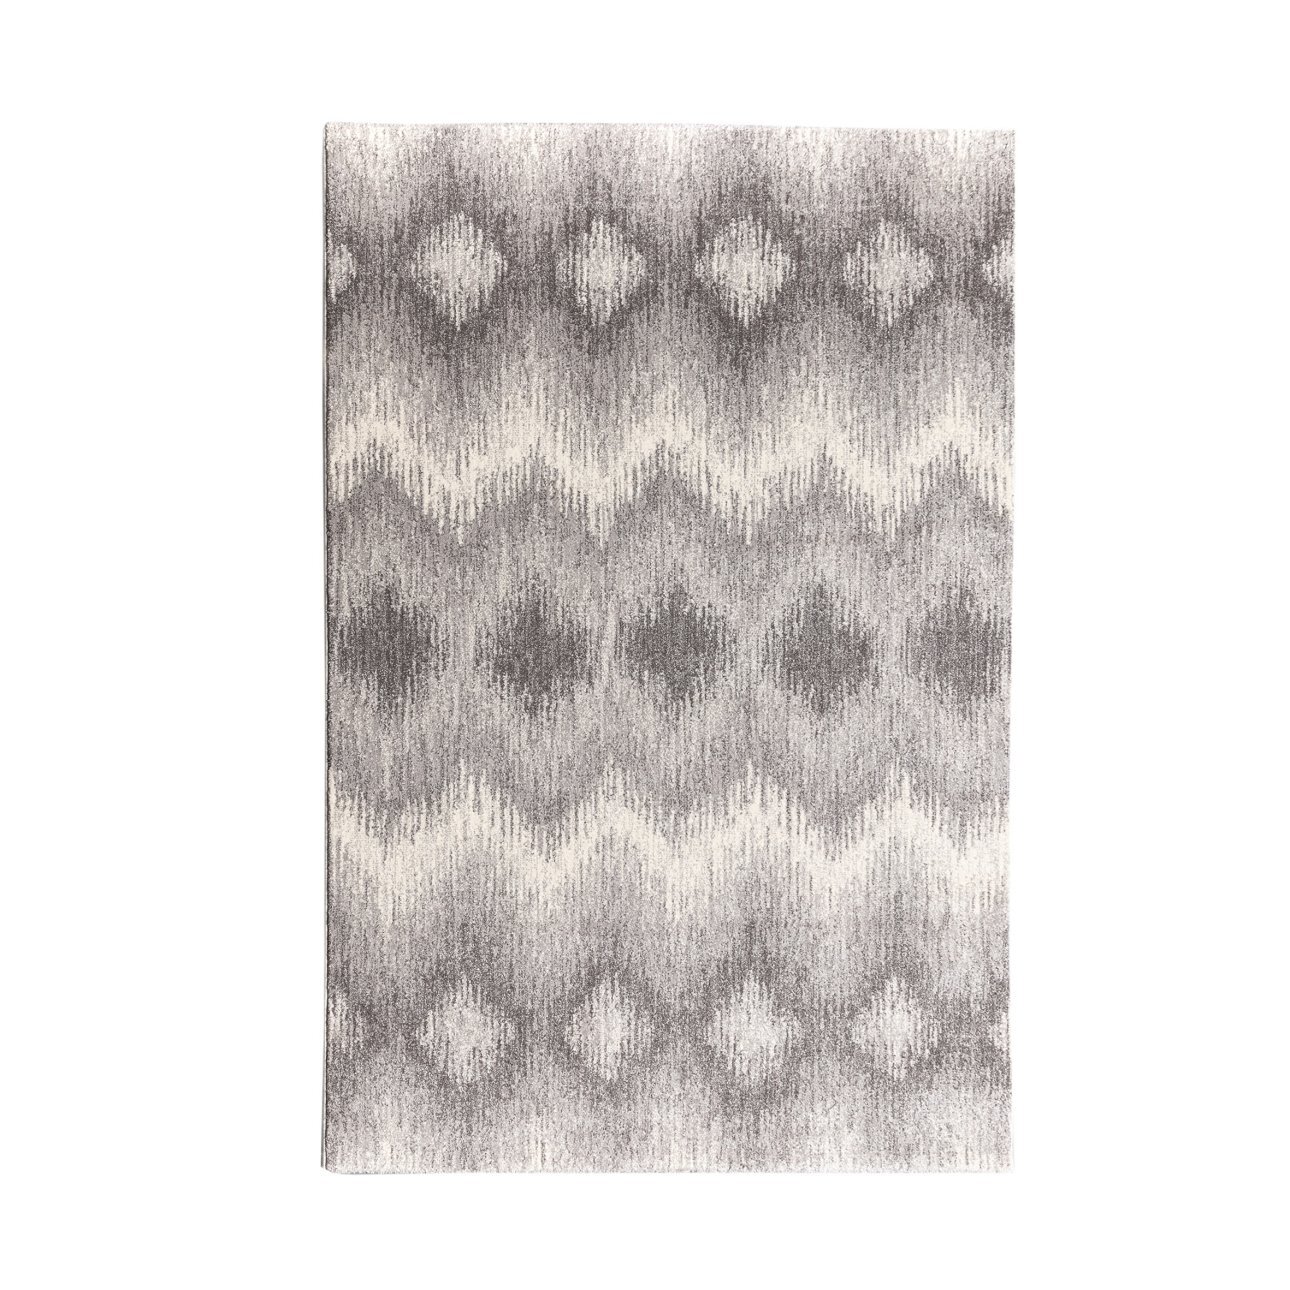 Teppich Sevilla Aspen silver/grey 160x230cm, 160 x 230 cm günstig online kaufen